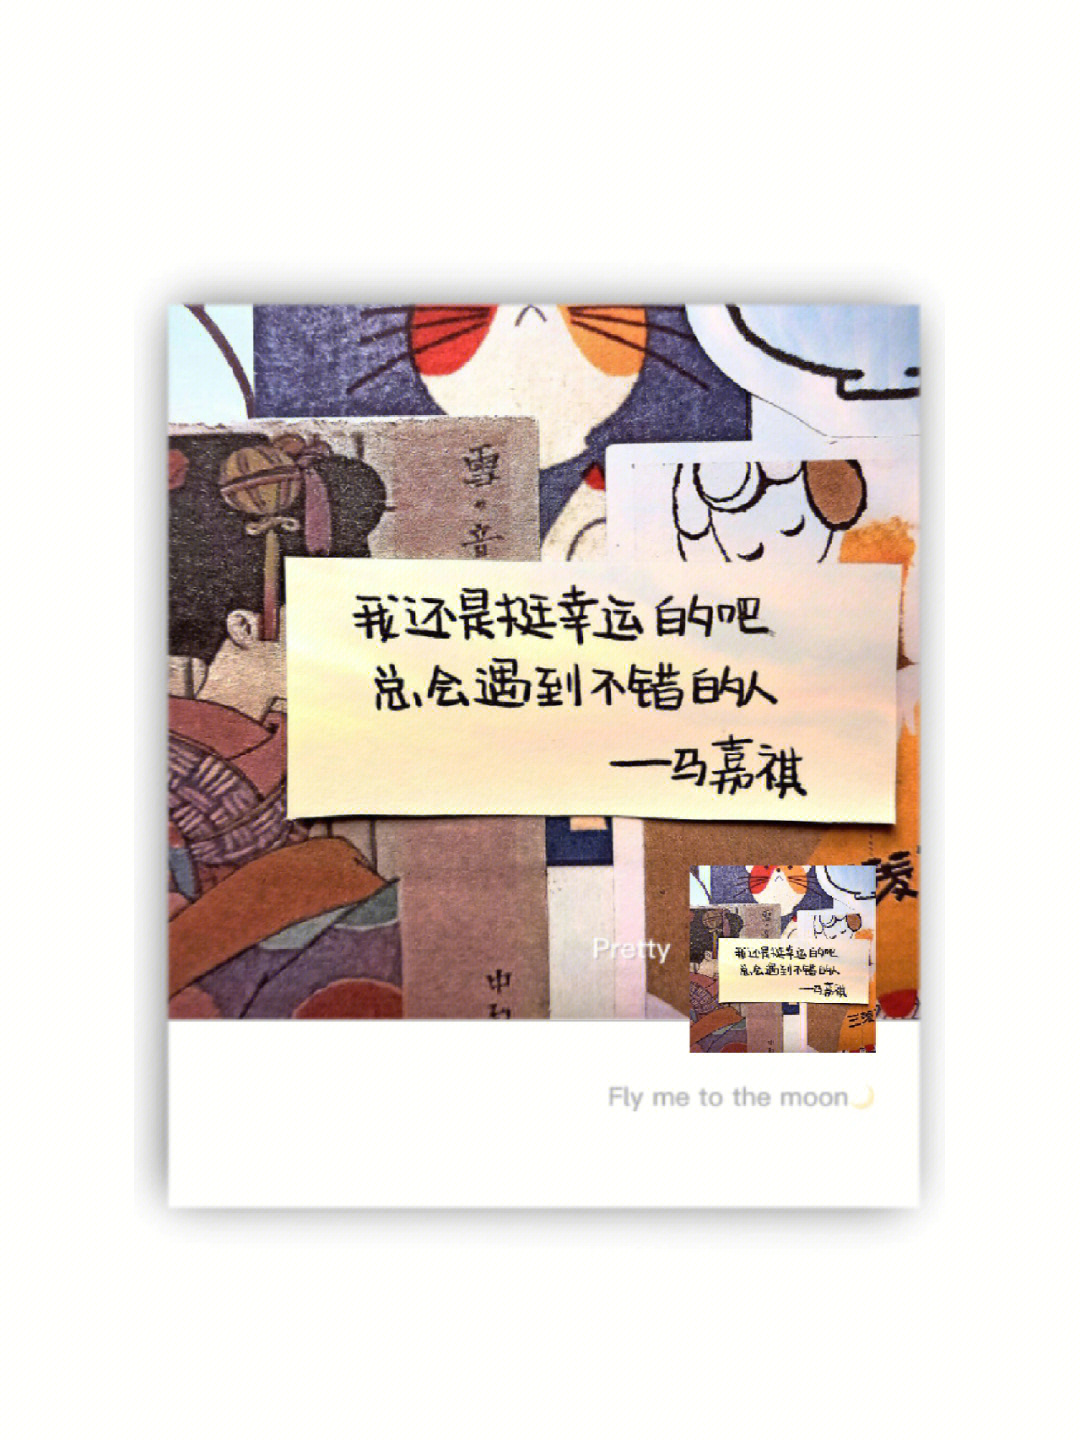 马嘉祺壁纸带字 文字图片